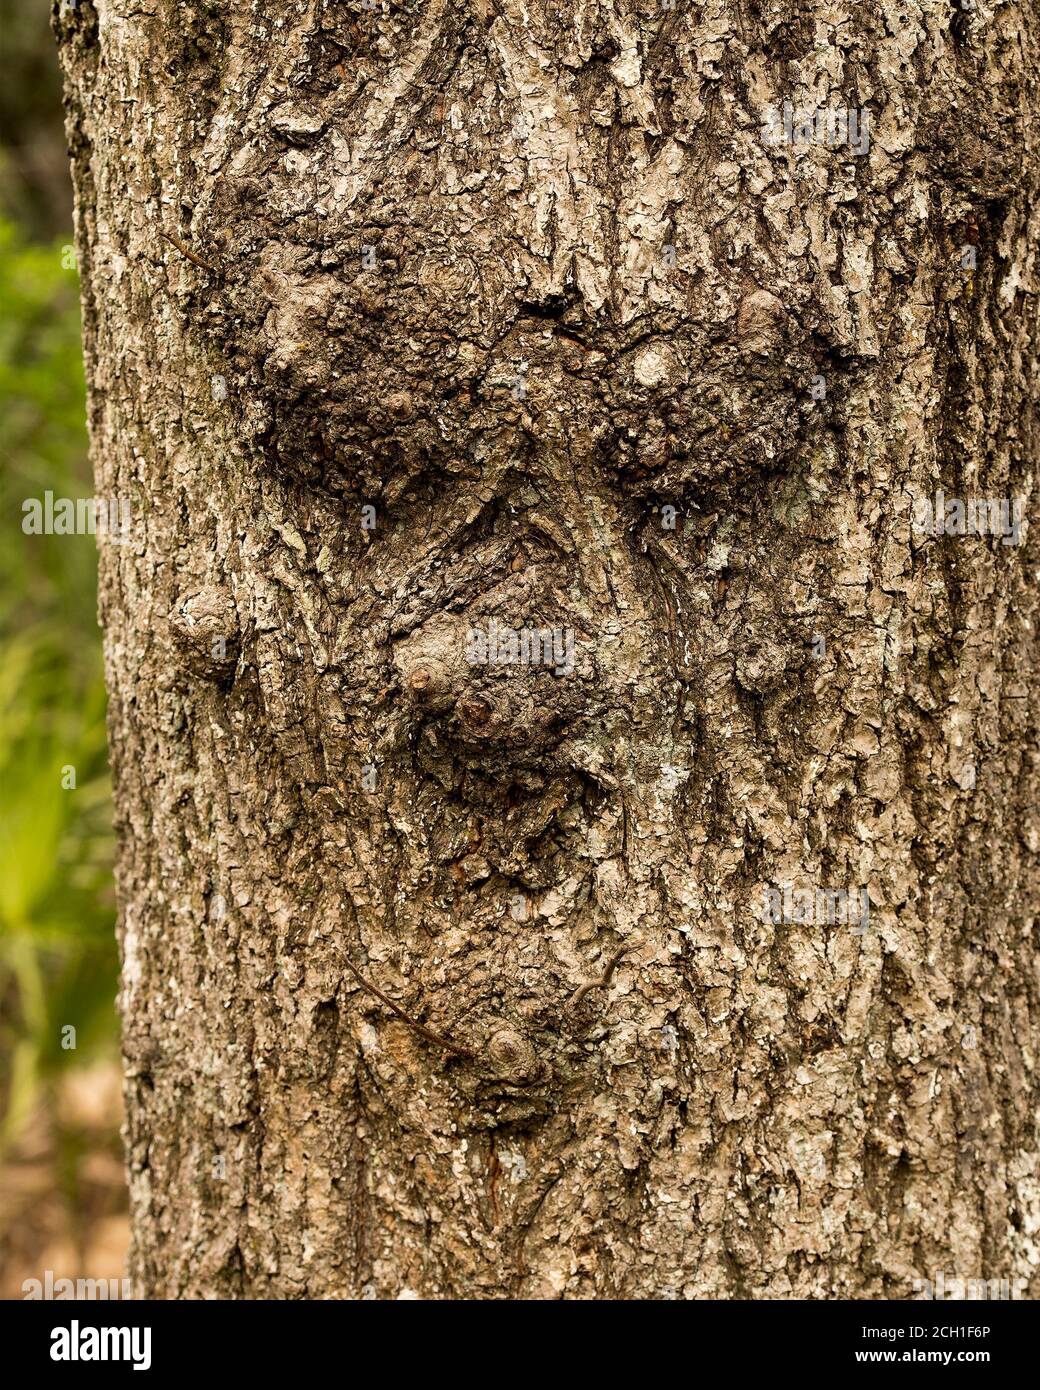 Baum mit menschlichem Gesicht in der Natur mit einer majestätischen Illusion im Wald, eine Seltenheit und erstaunliche Phänomene. Stockfoto